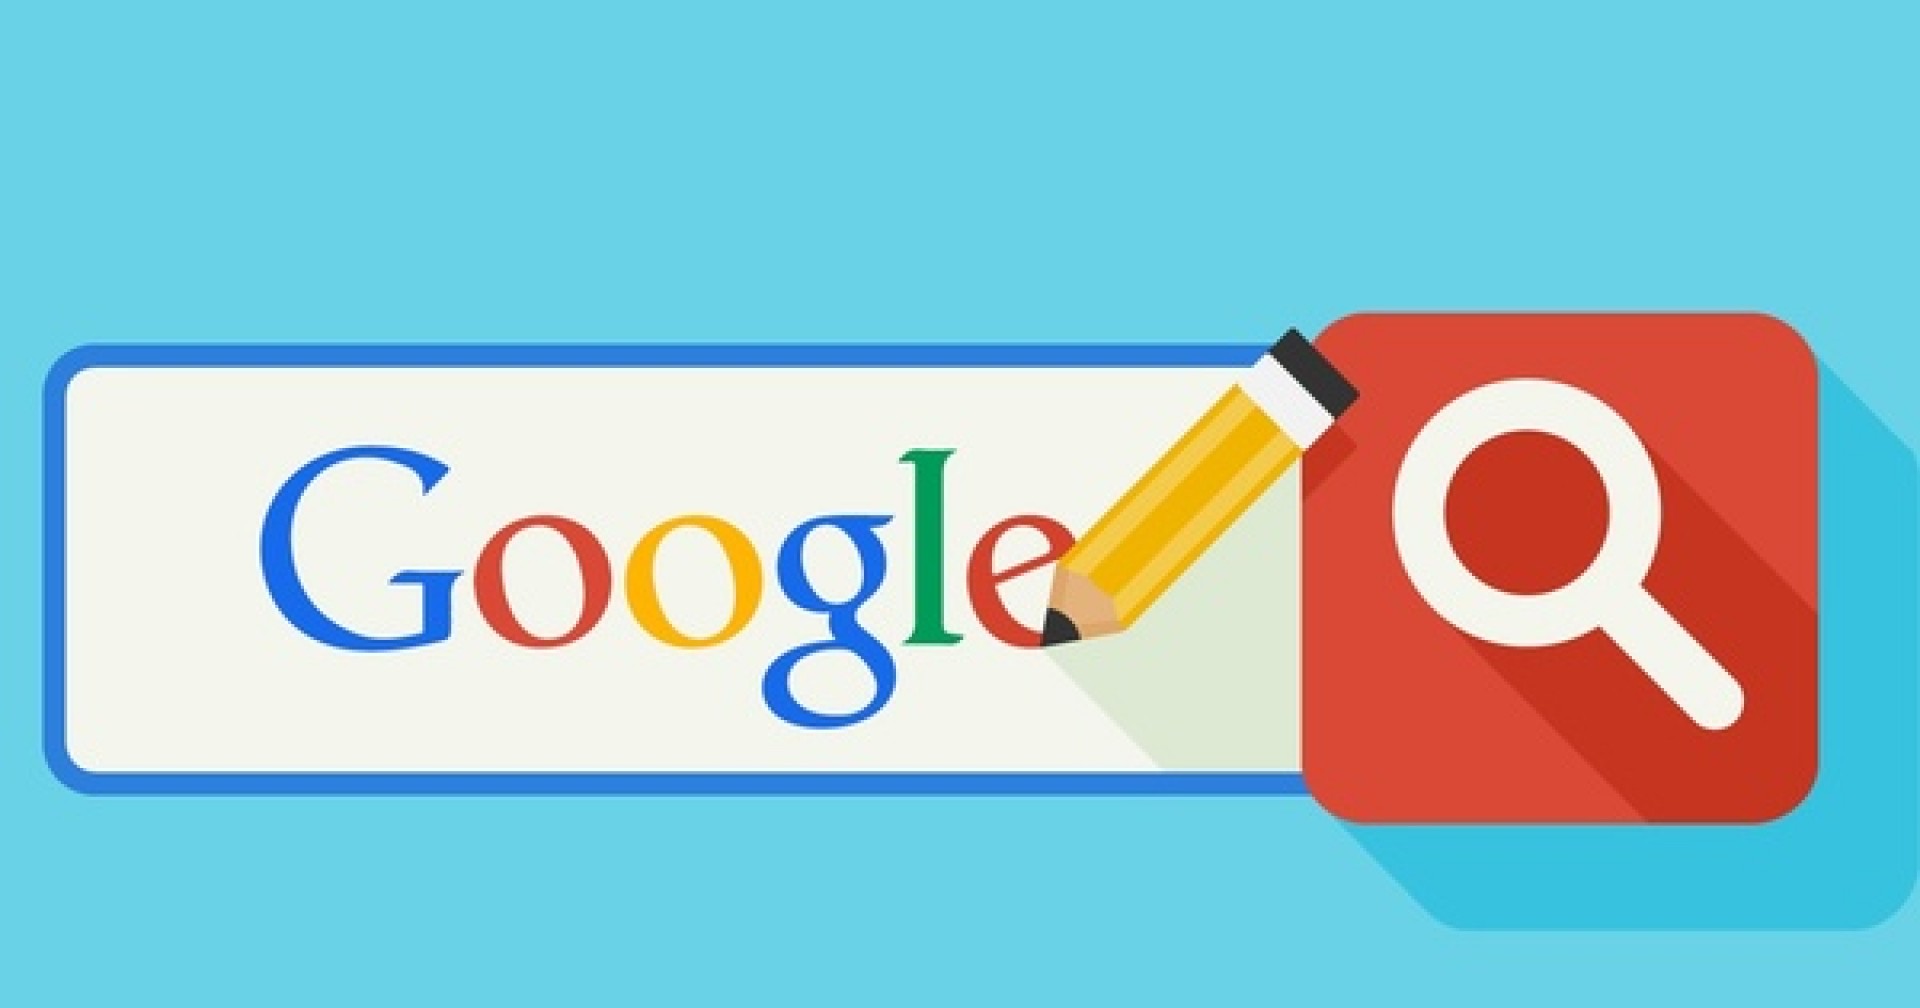 Các thủ thuật tìm kiếm hiệu quả trên Google cho sinh viên